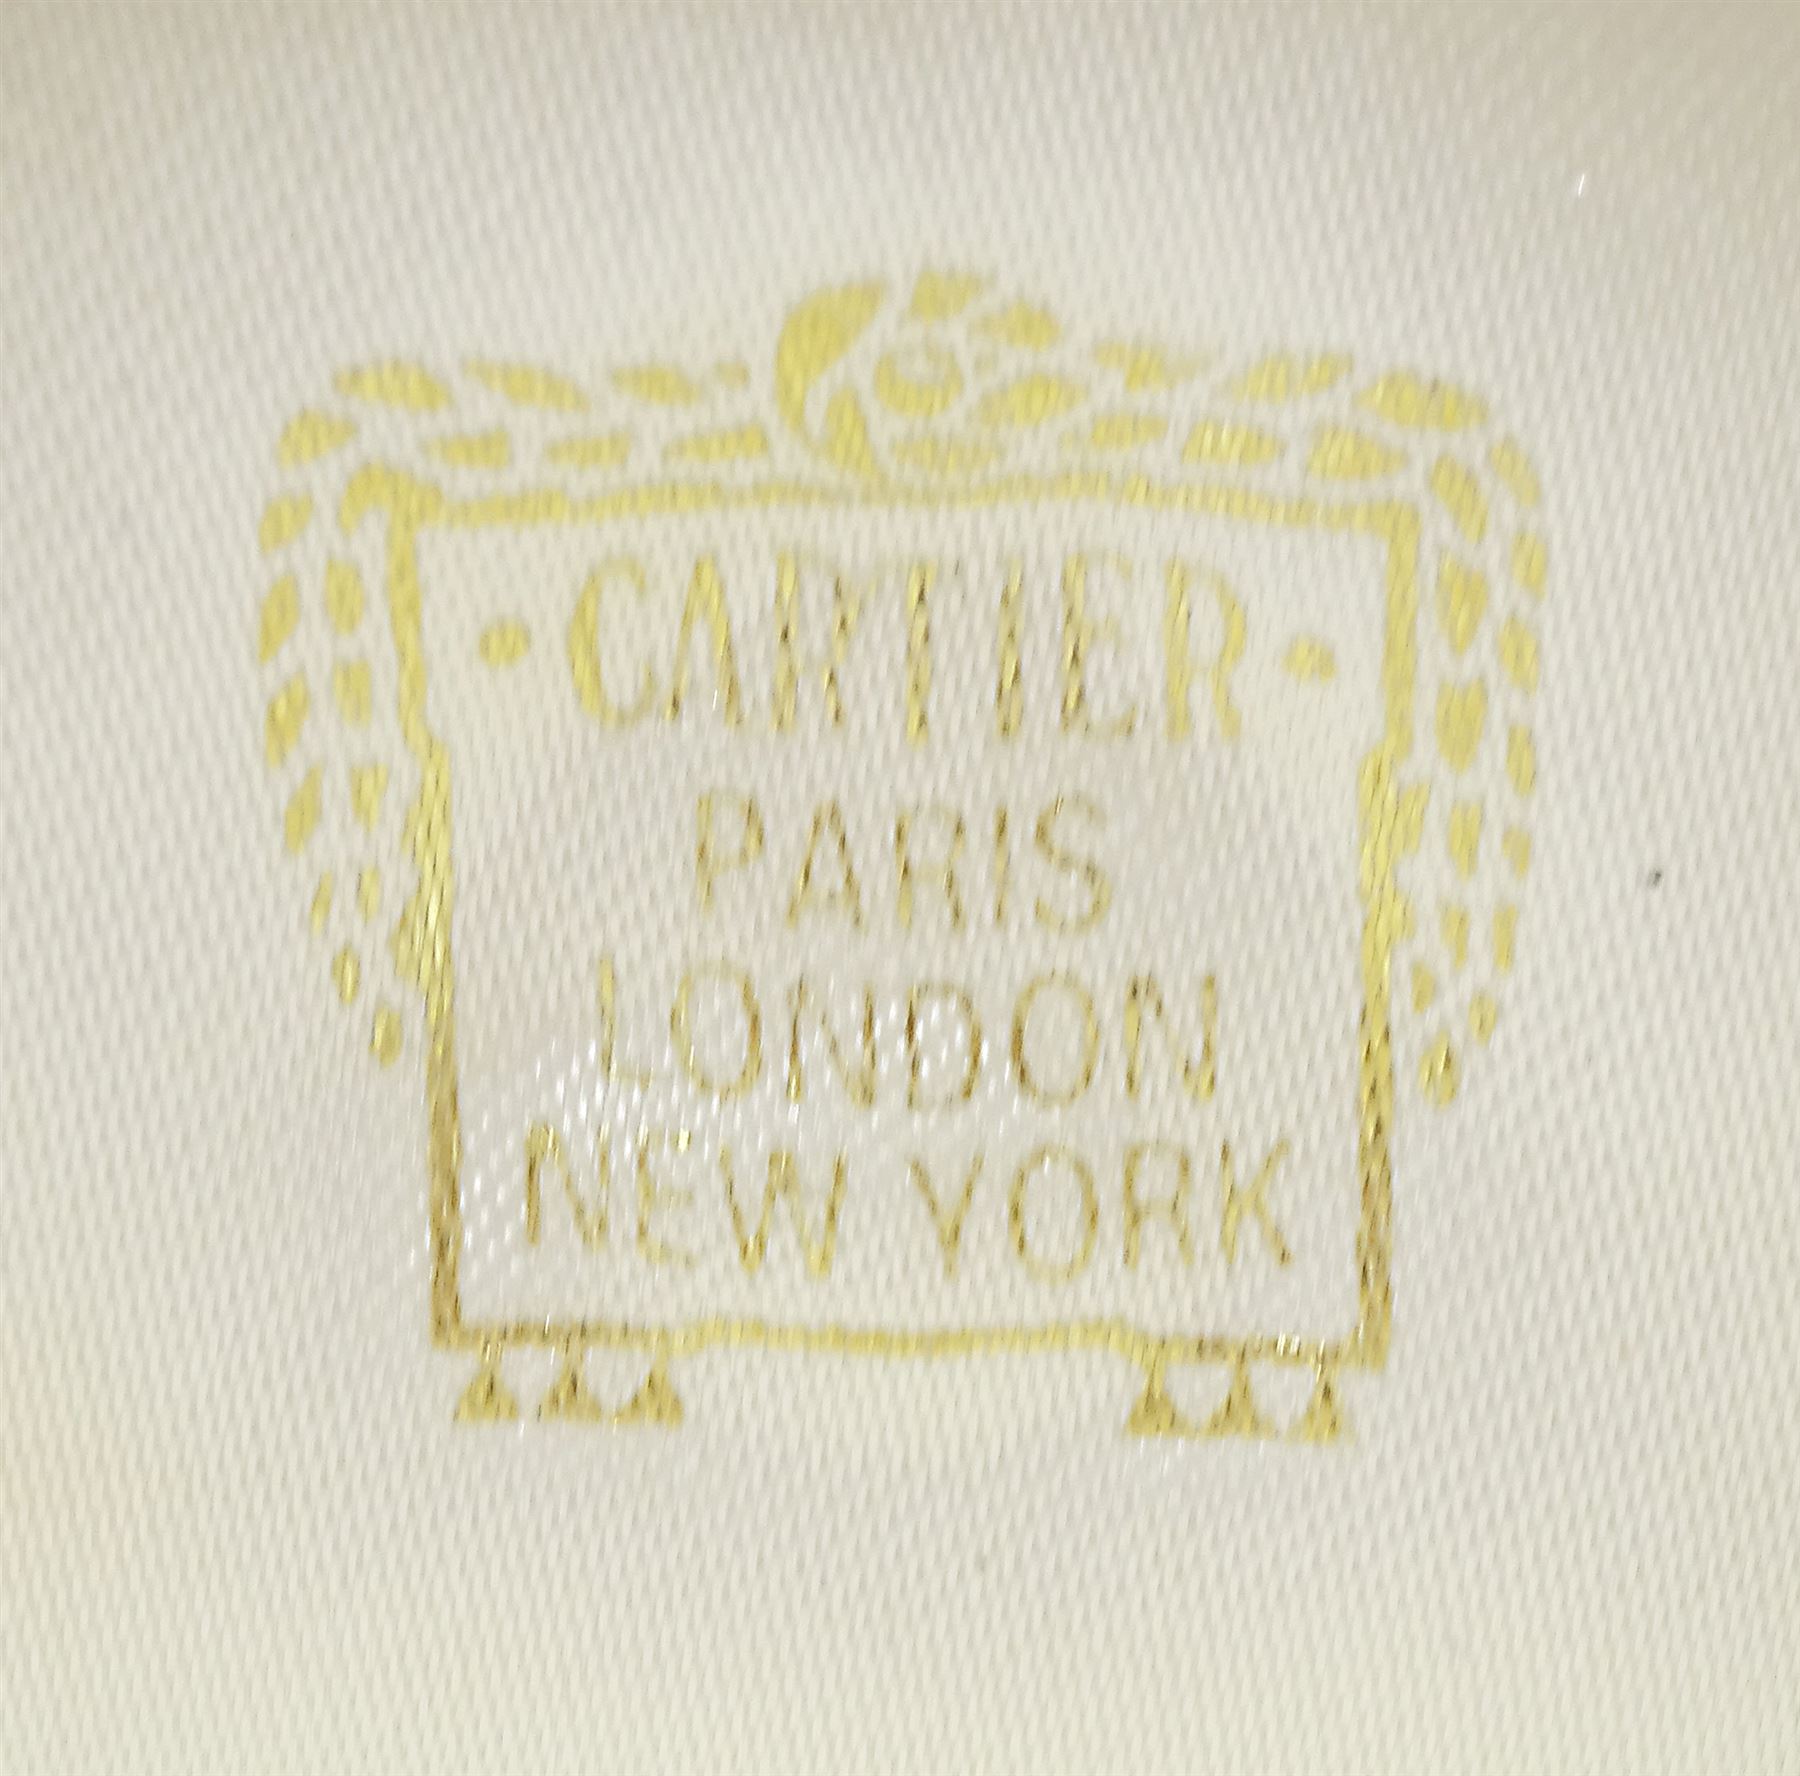 Cartier Panthere 18ct gold tsavorite garnet ring - Image 10 of 10